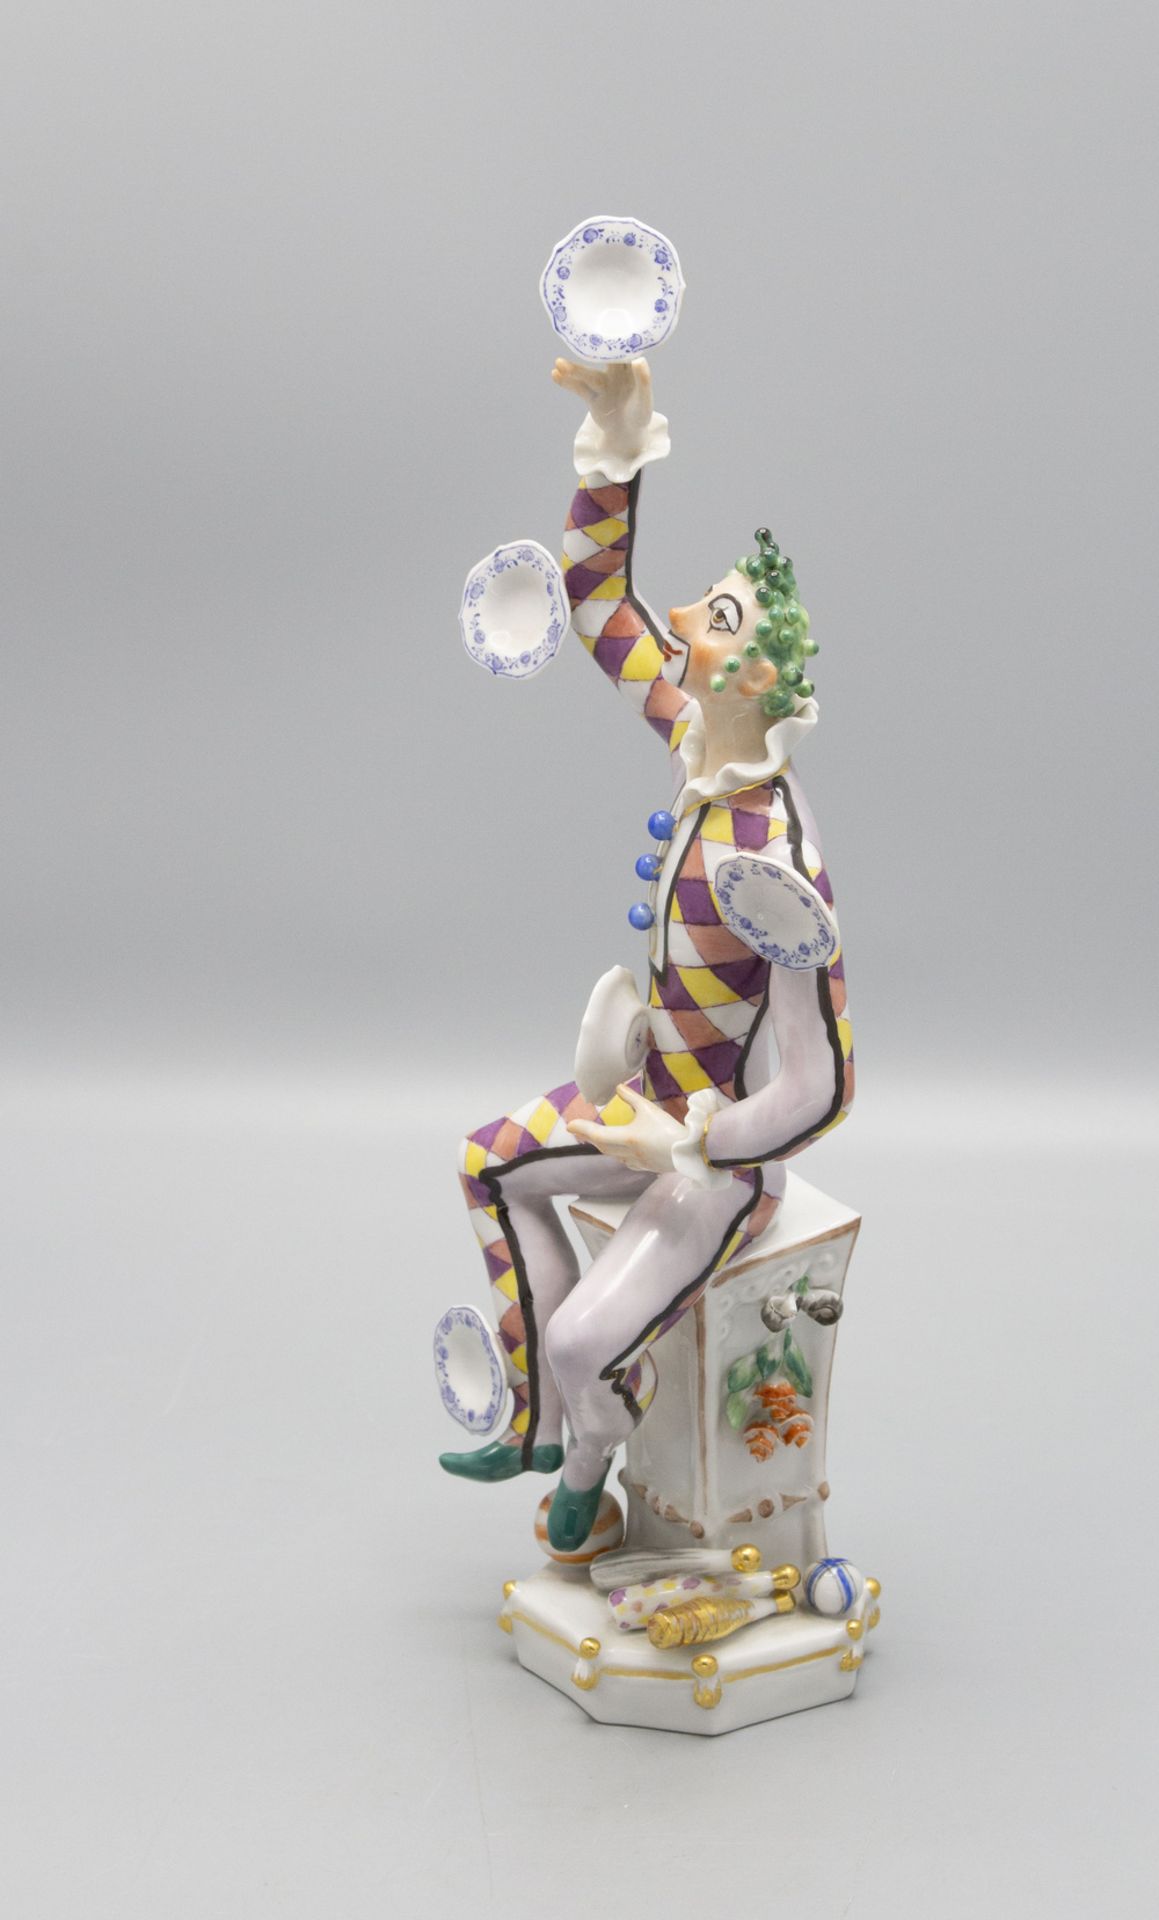 Porzellanfigur 'Der Jongleur' / A porcelain figurine 'The Juggler', Meissen, 1976 - Bild 2 aus 5